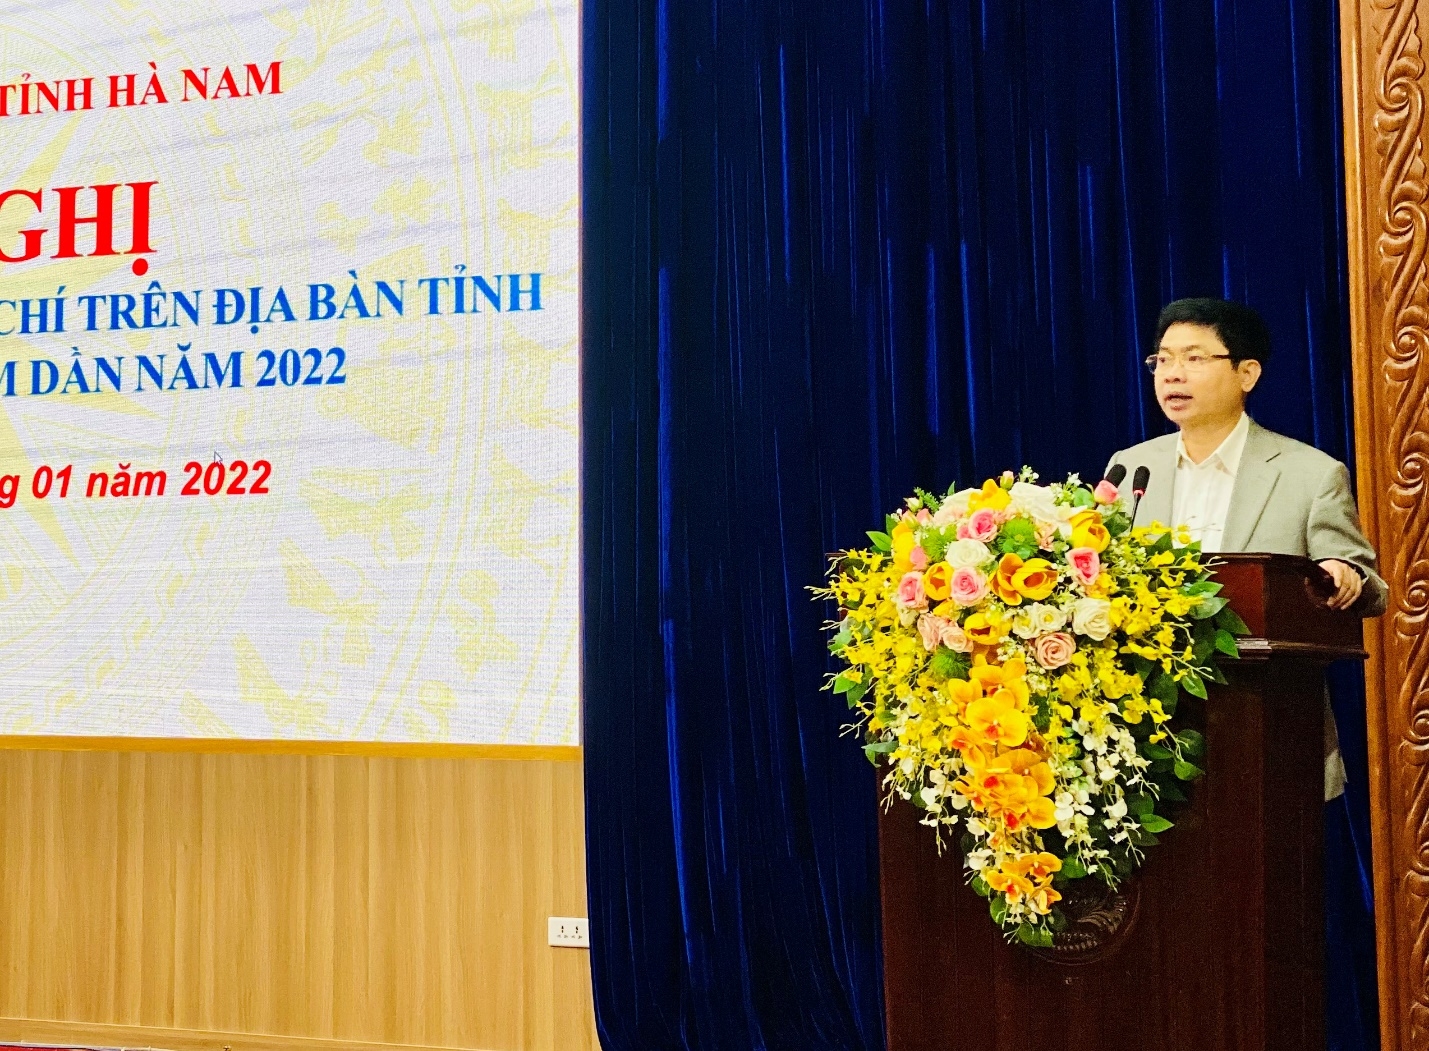 Chủ tịch UBND tỉnh Hà Nam Trương Quốc Huy: Tập trung phát triển các dự án nhà ở xã hội với quy mô từ 40 đến 50ha